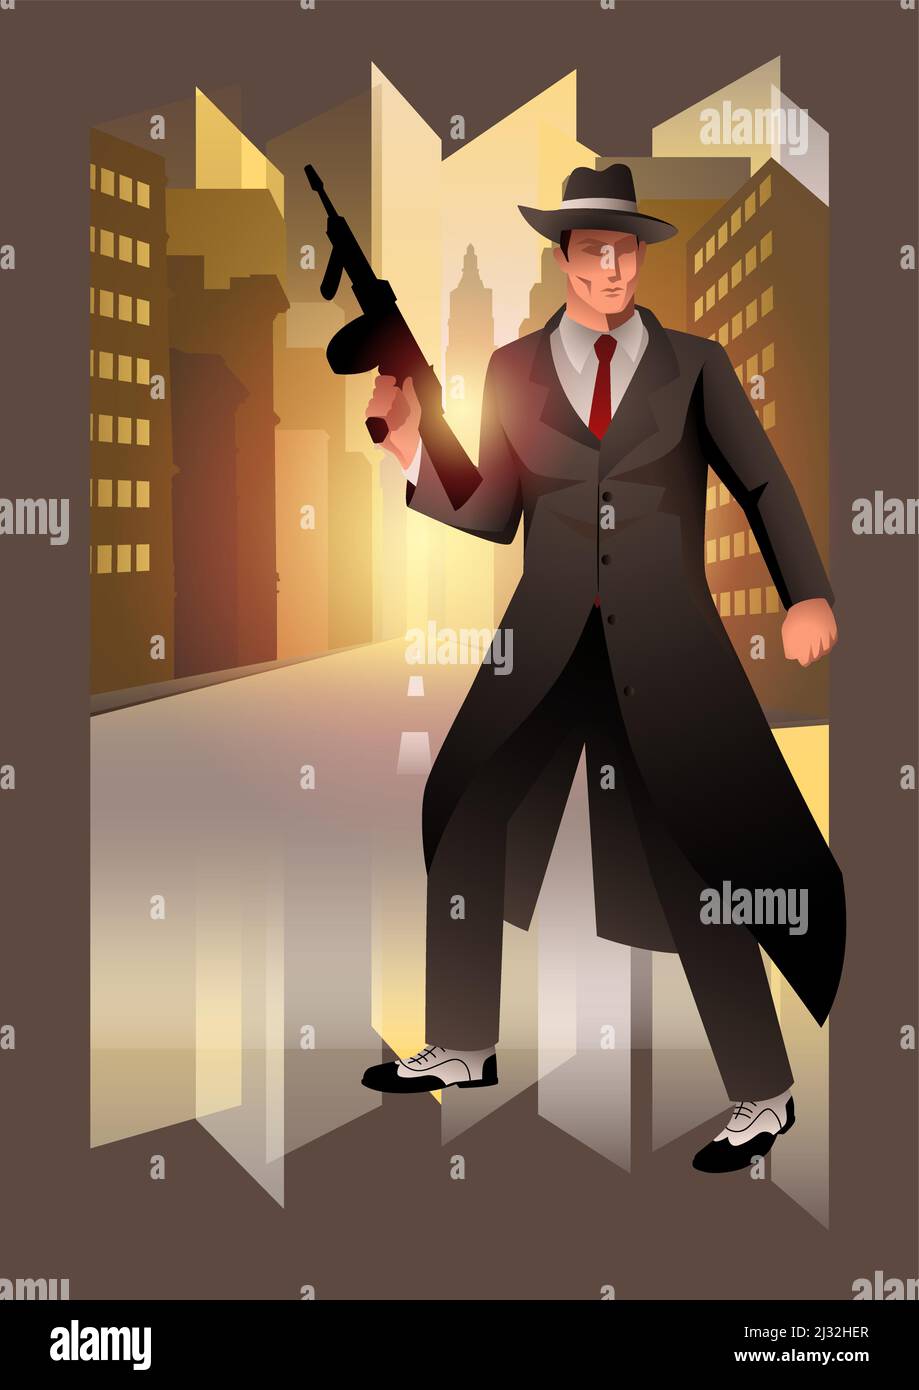 Illustrazione di un uomo che tiene mitragliatrice pistola, gangster, mobster, mafia tema, art deco vettore illustrazione stile Illustrazione Vettoriale